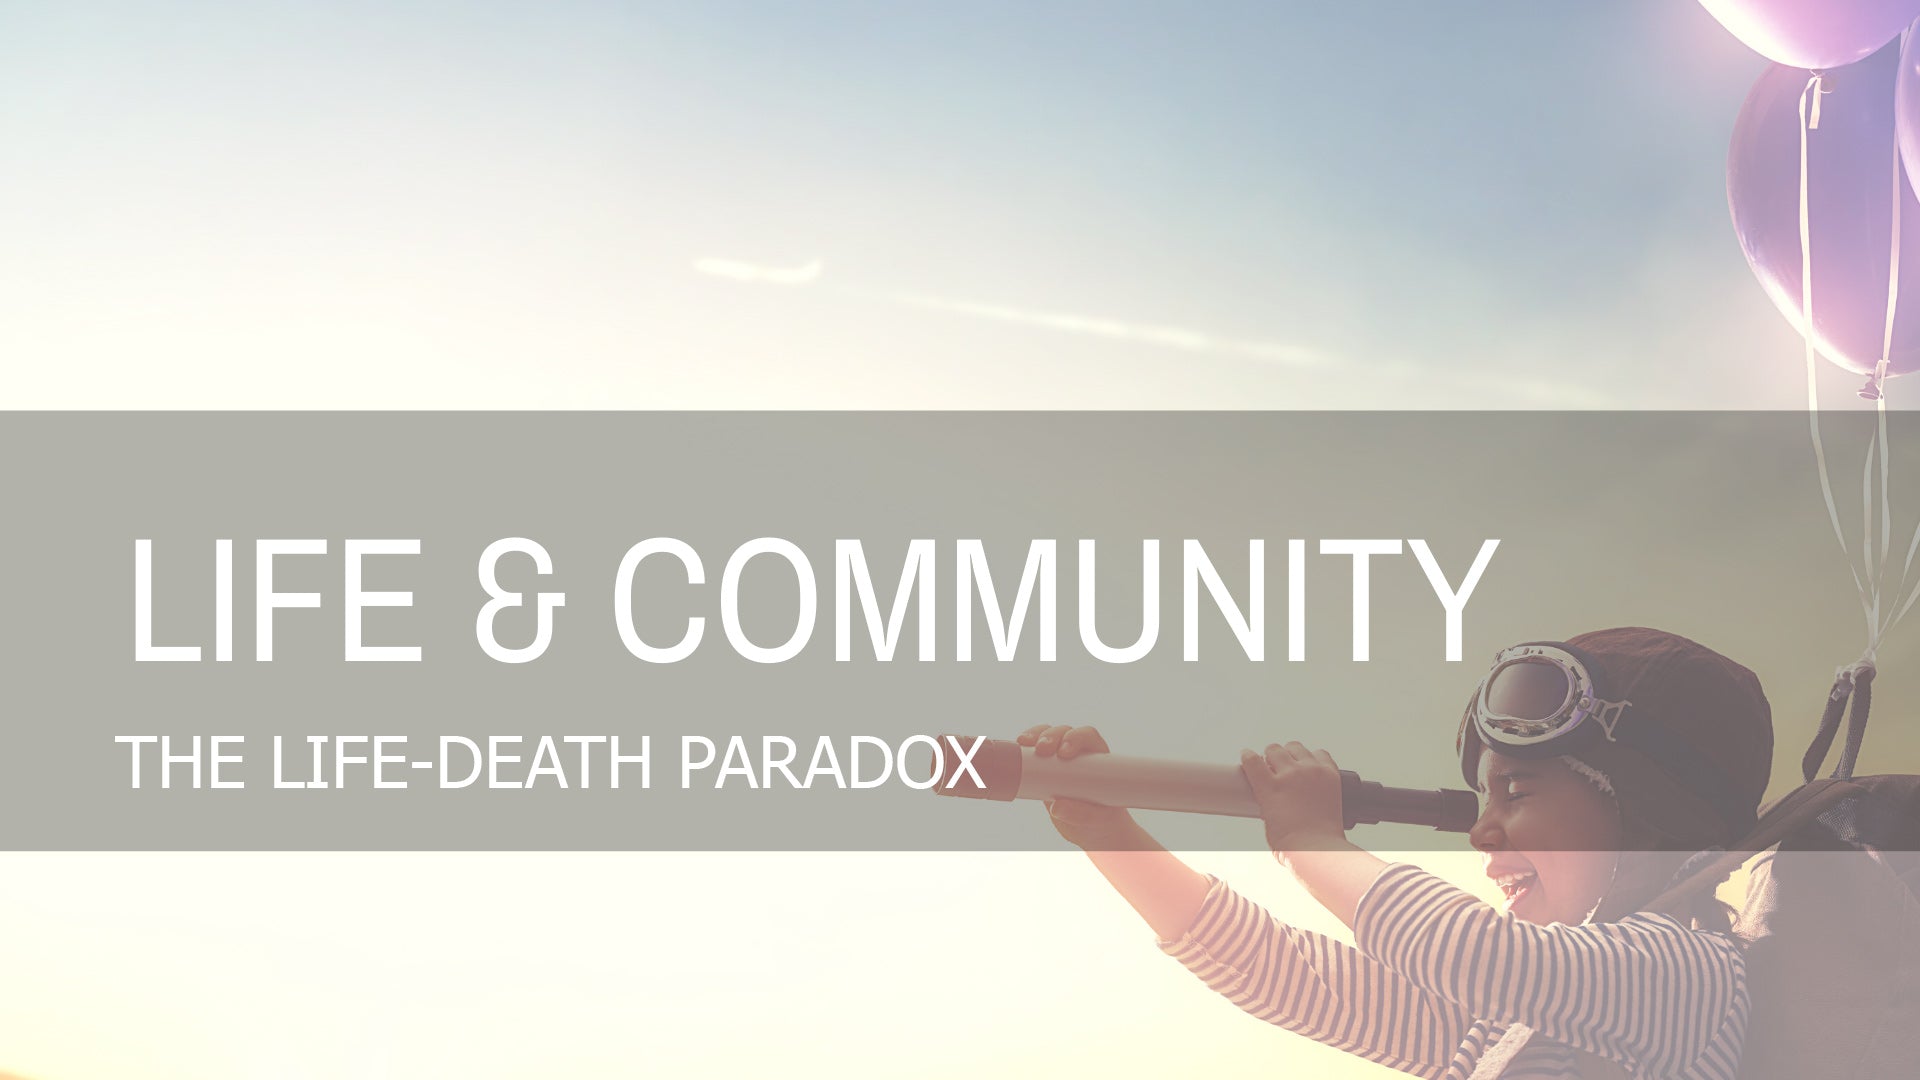 The Life-Death Paradox